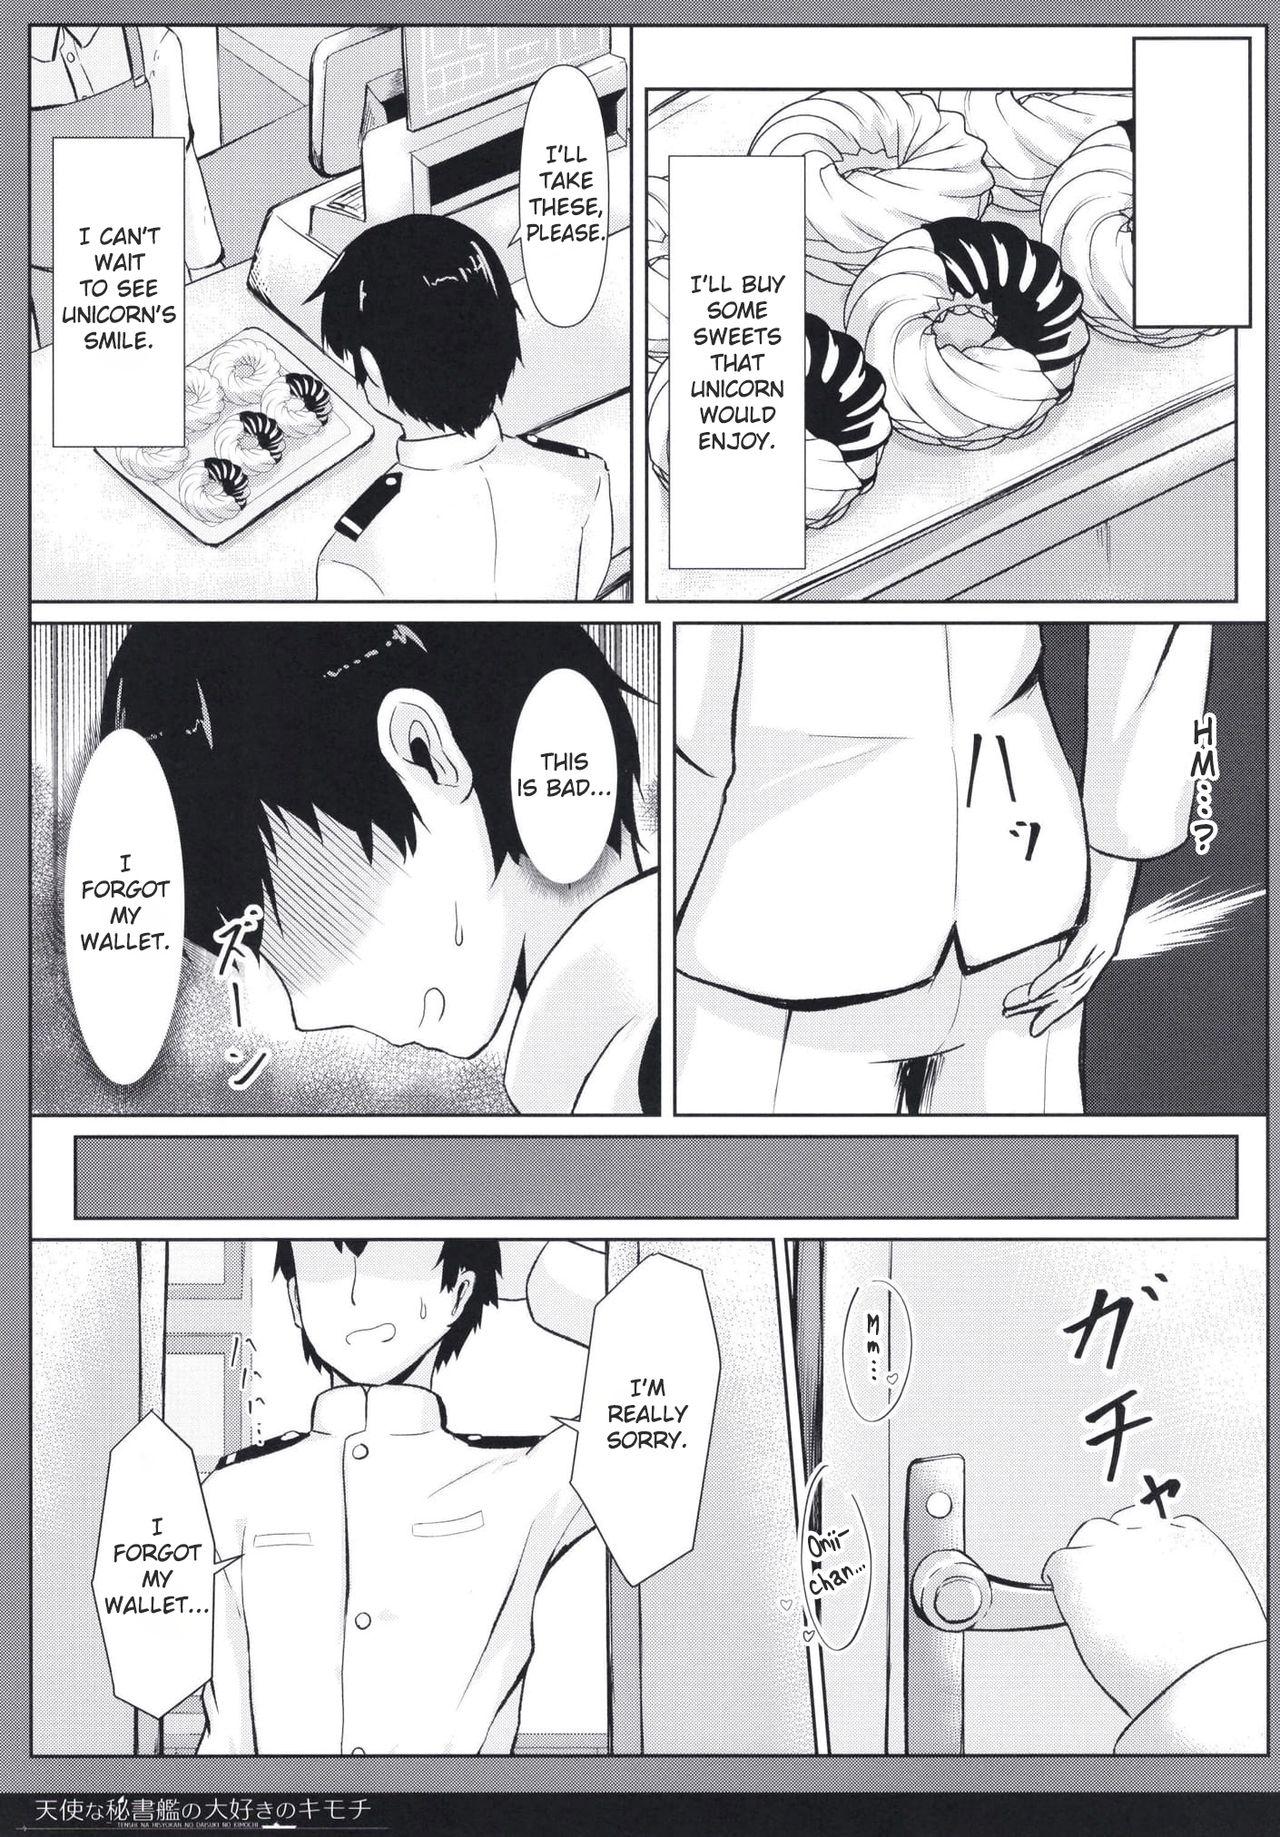 Emo Gay Tenshi na Hisyokan no Daisuki no Kimochi - Azur lane Amateur - Page 7